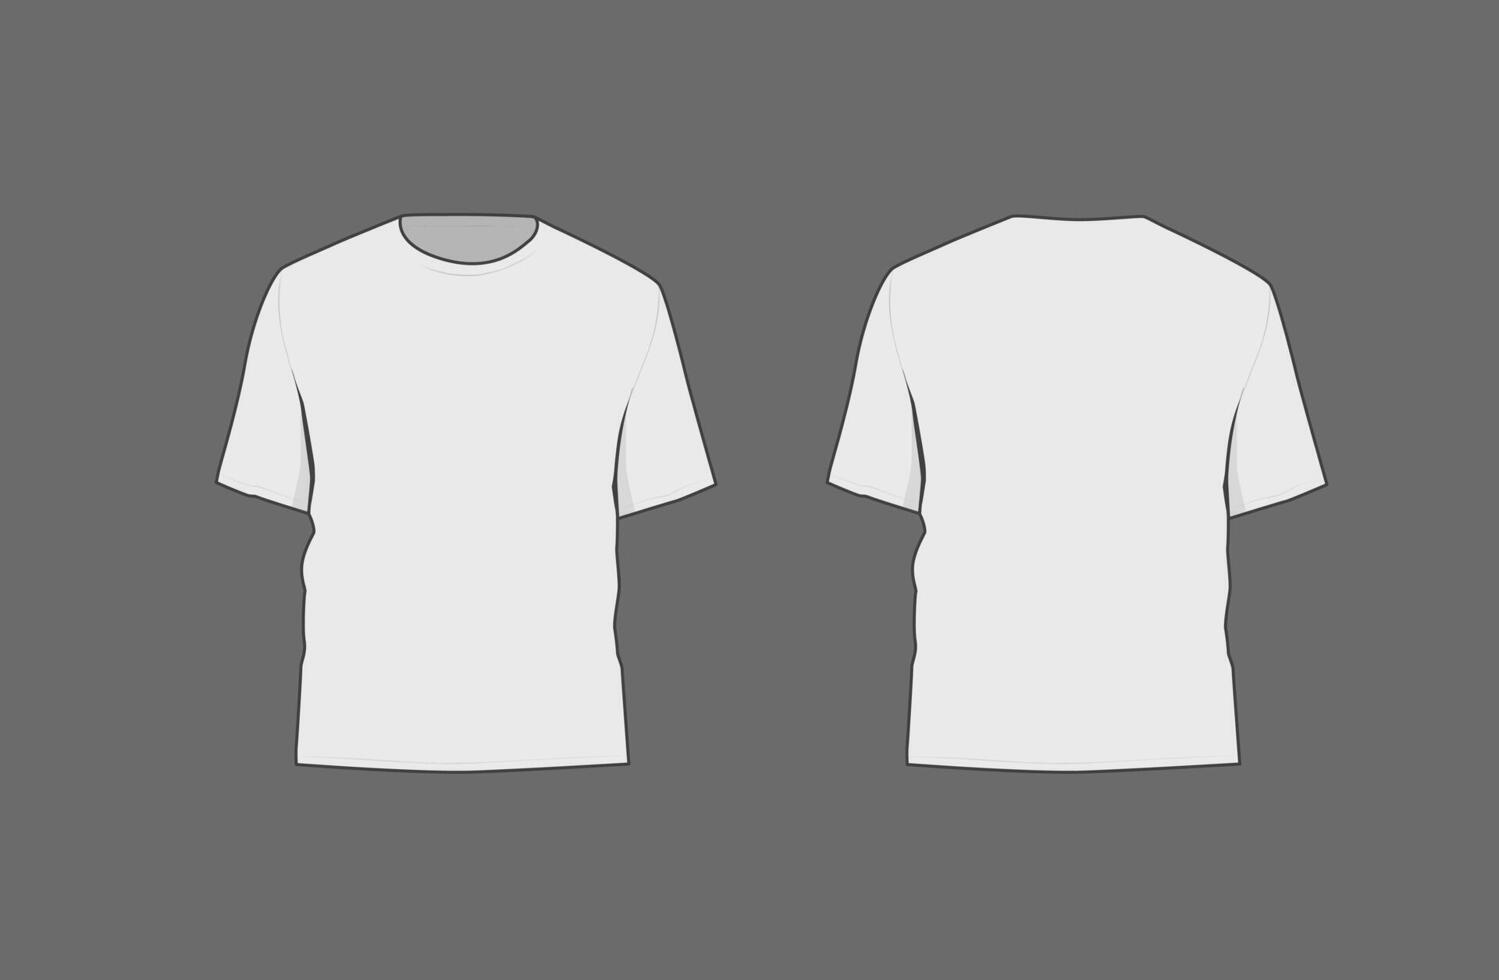 Basic schwarz männlich T-Shirt Attrappe, Lehrmodell, Simulation. Vorderseite und zurück Sicht. leer Textil- drucken Vorlage zum Mode Kleidung. vektor